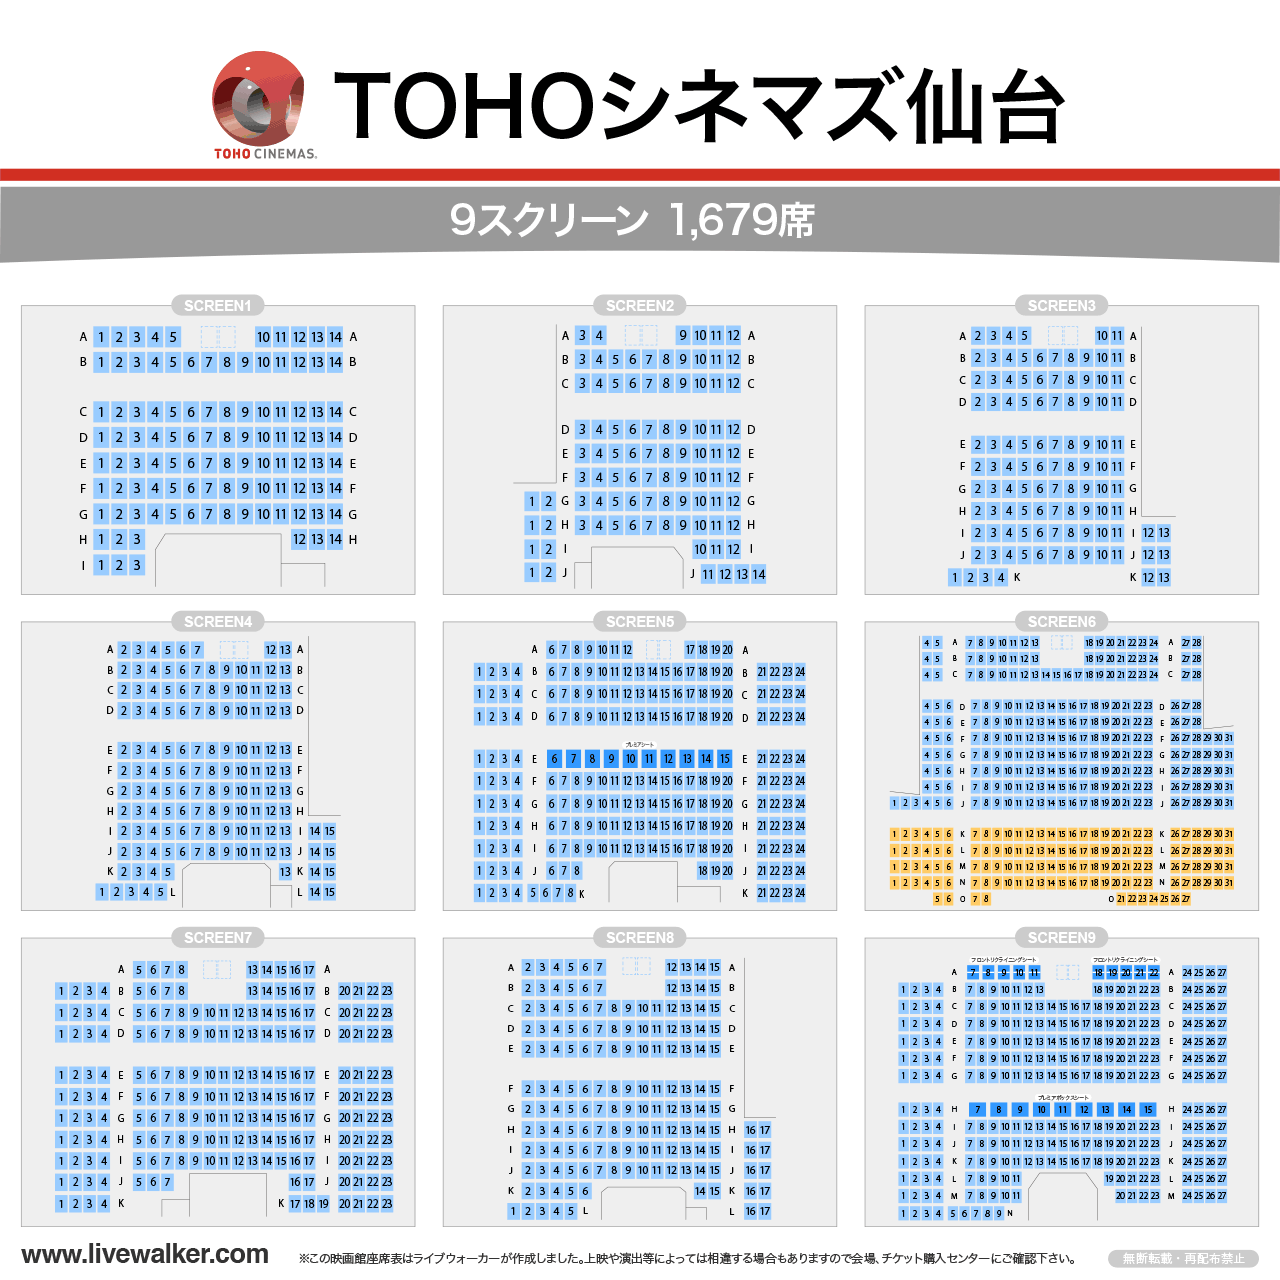 TOHOシネマズ仙台スクリーンの座席表